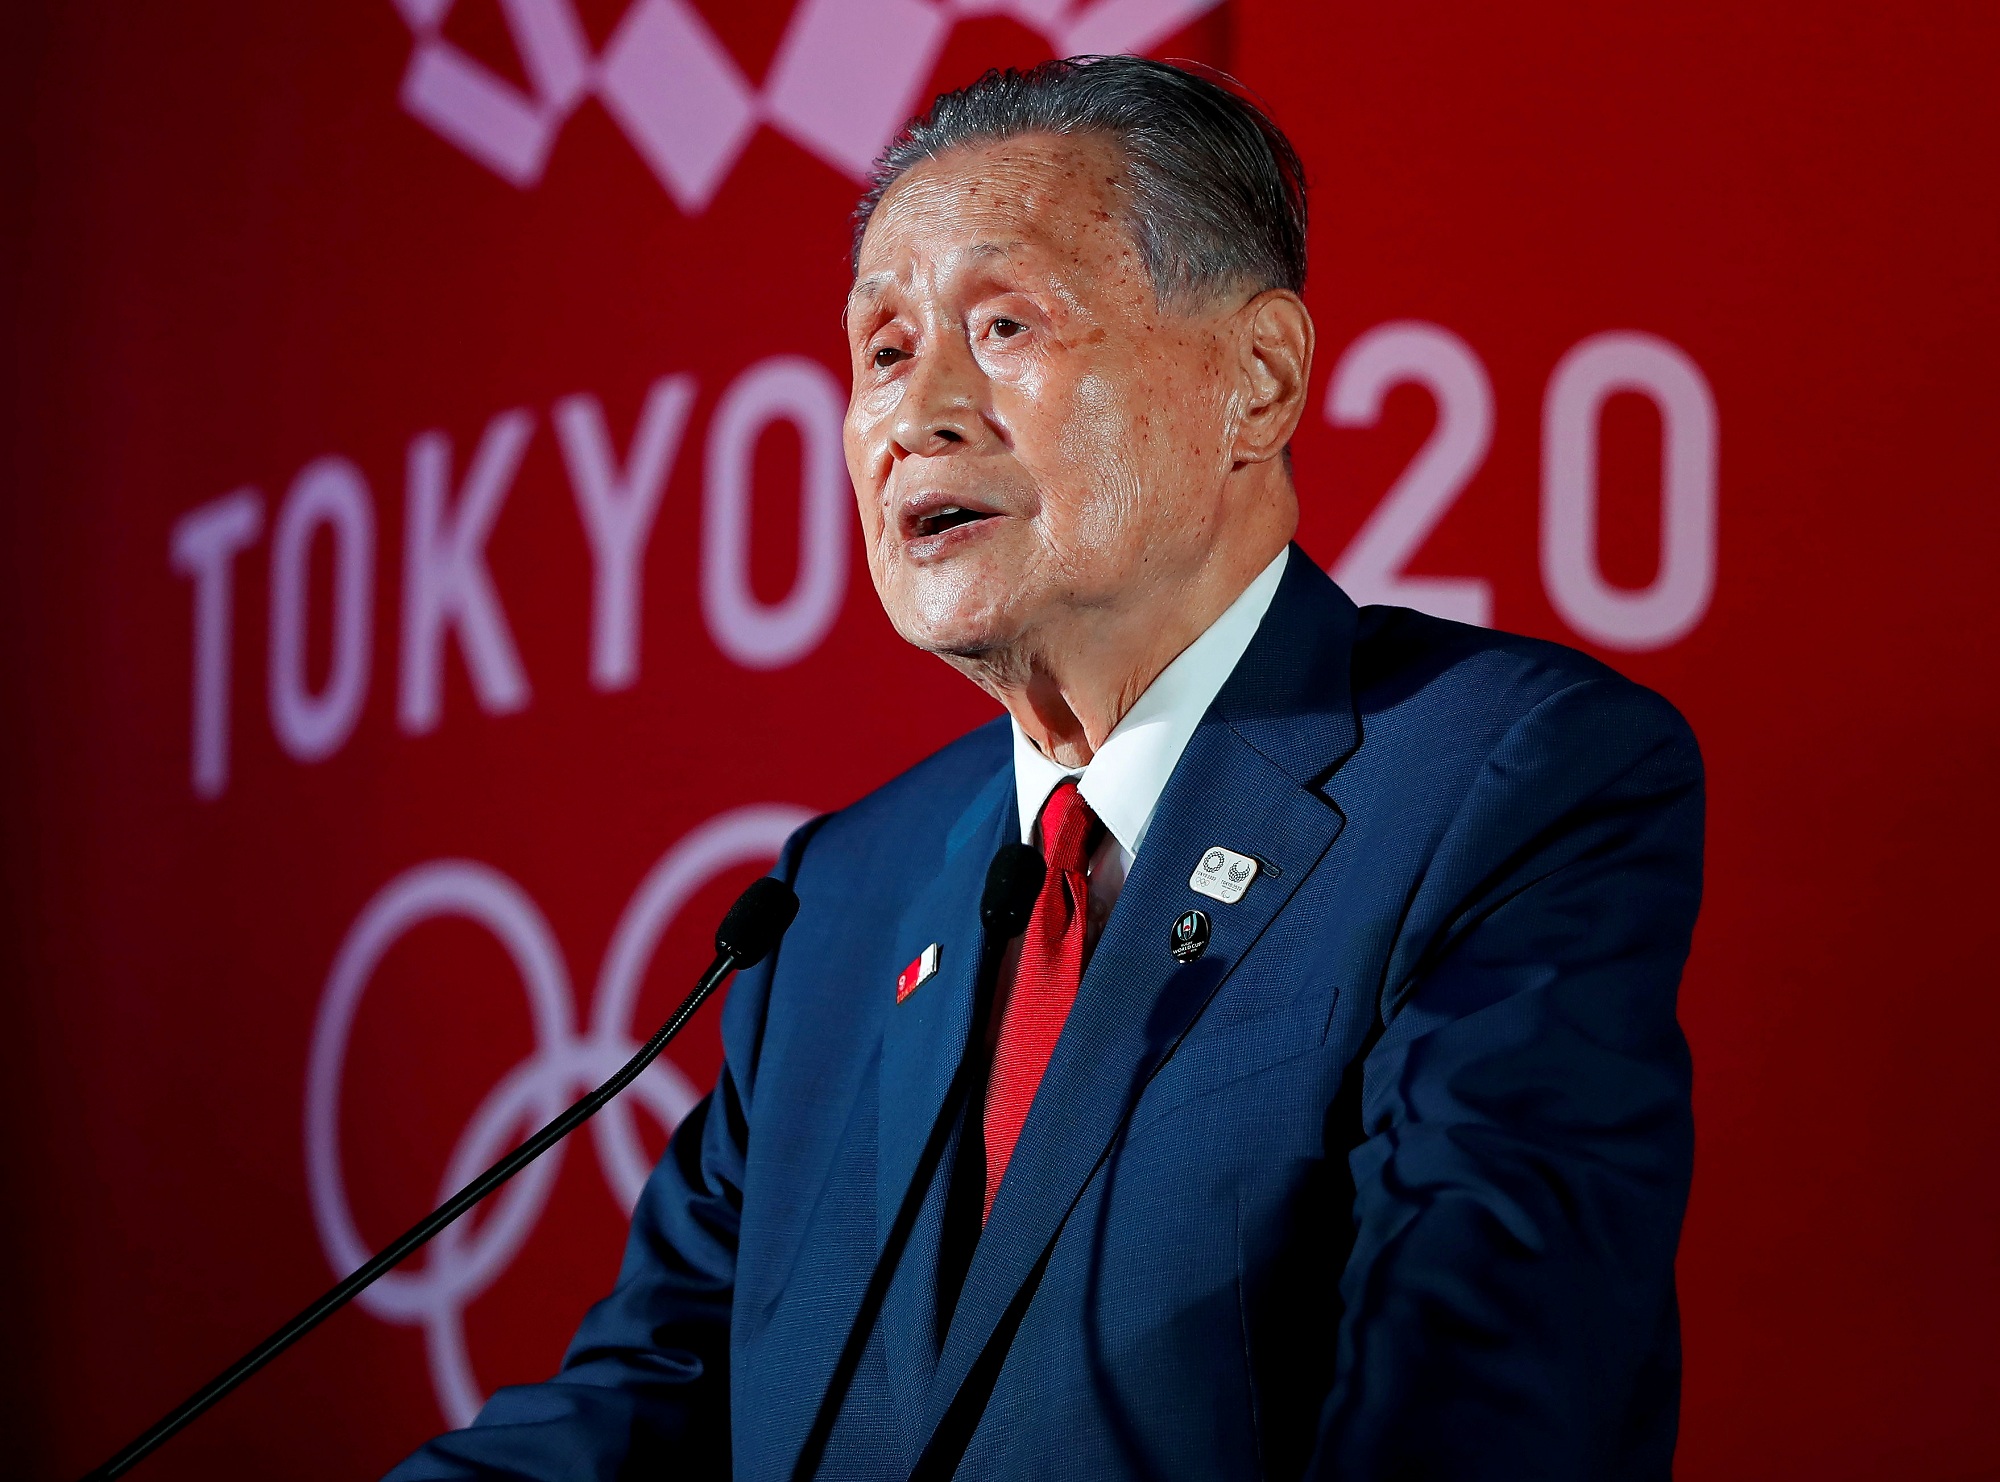 رئيس اللجنة المنظمة: من المستحيل إلغاء الدورة الأولمبية 2020